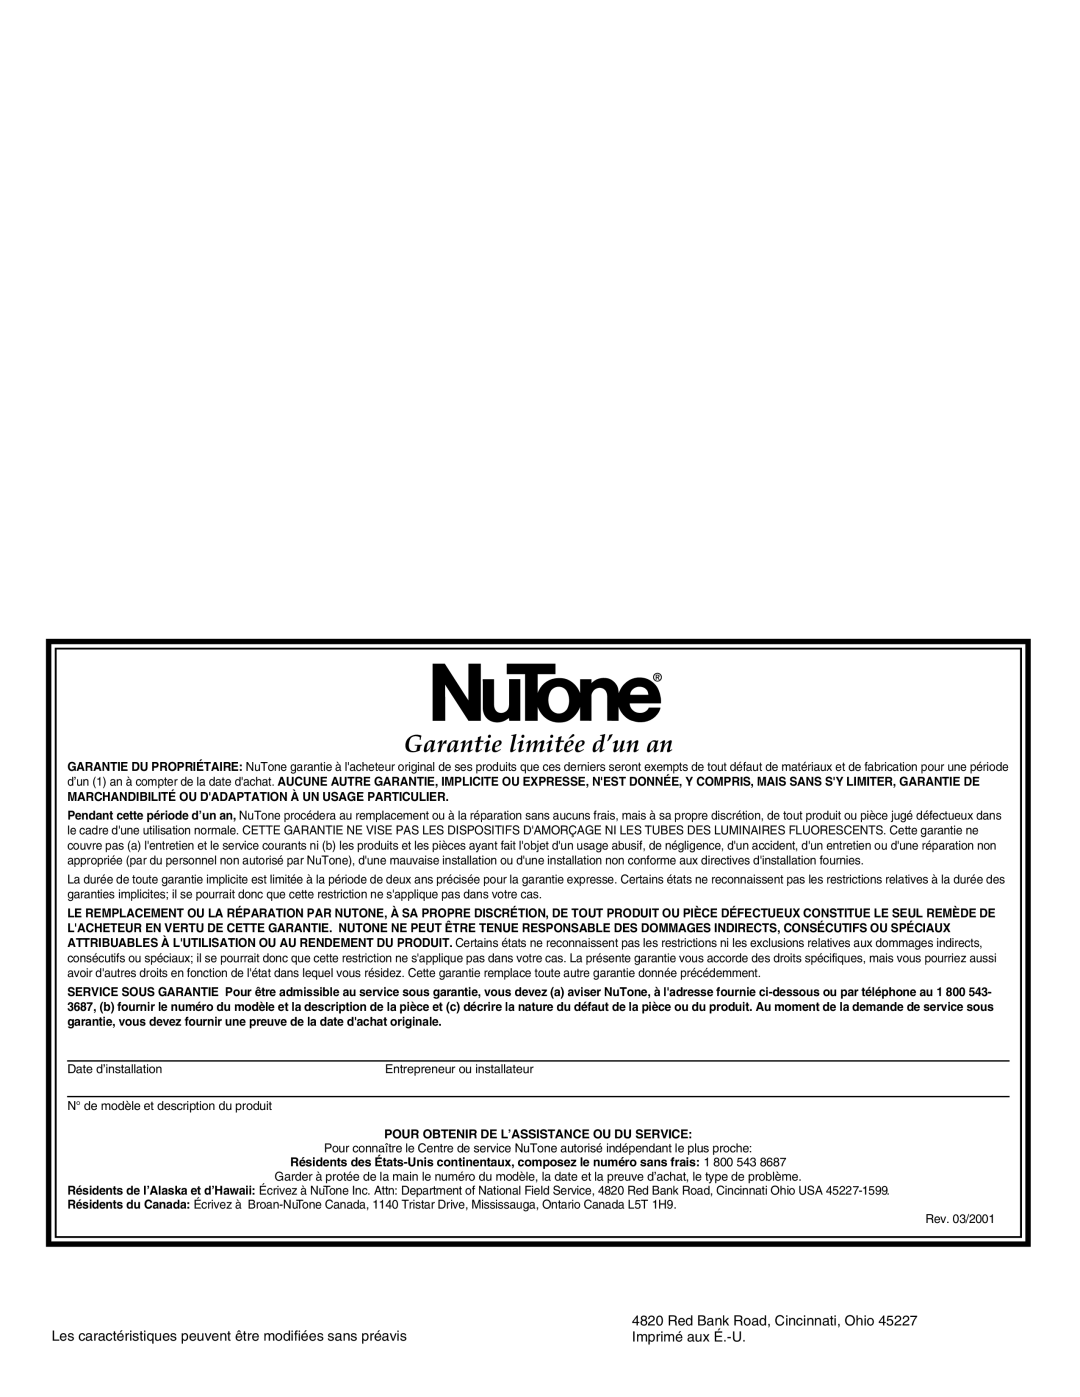 NuTone LA-157MA, LA-155GN Garantie limitée d’un an, Red Bank Road, Cincinnati, Ohio, Imprimé aux É.-U 